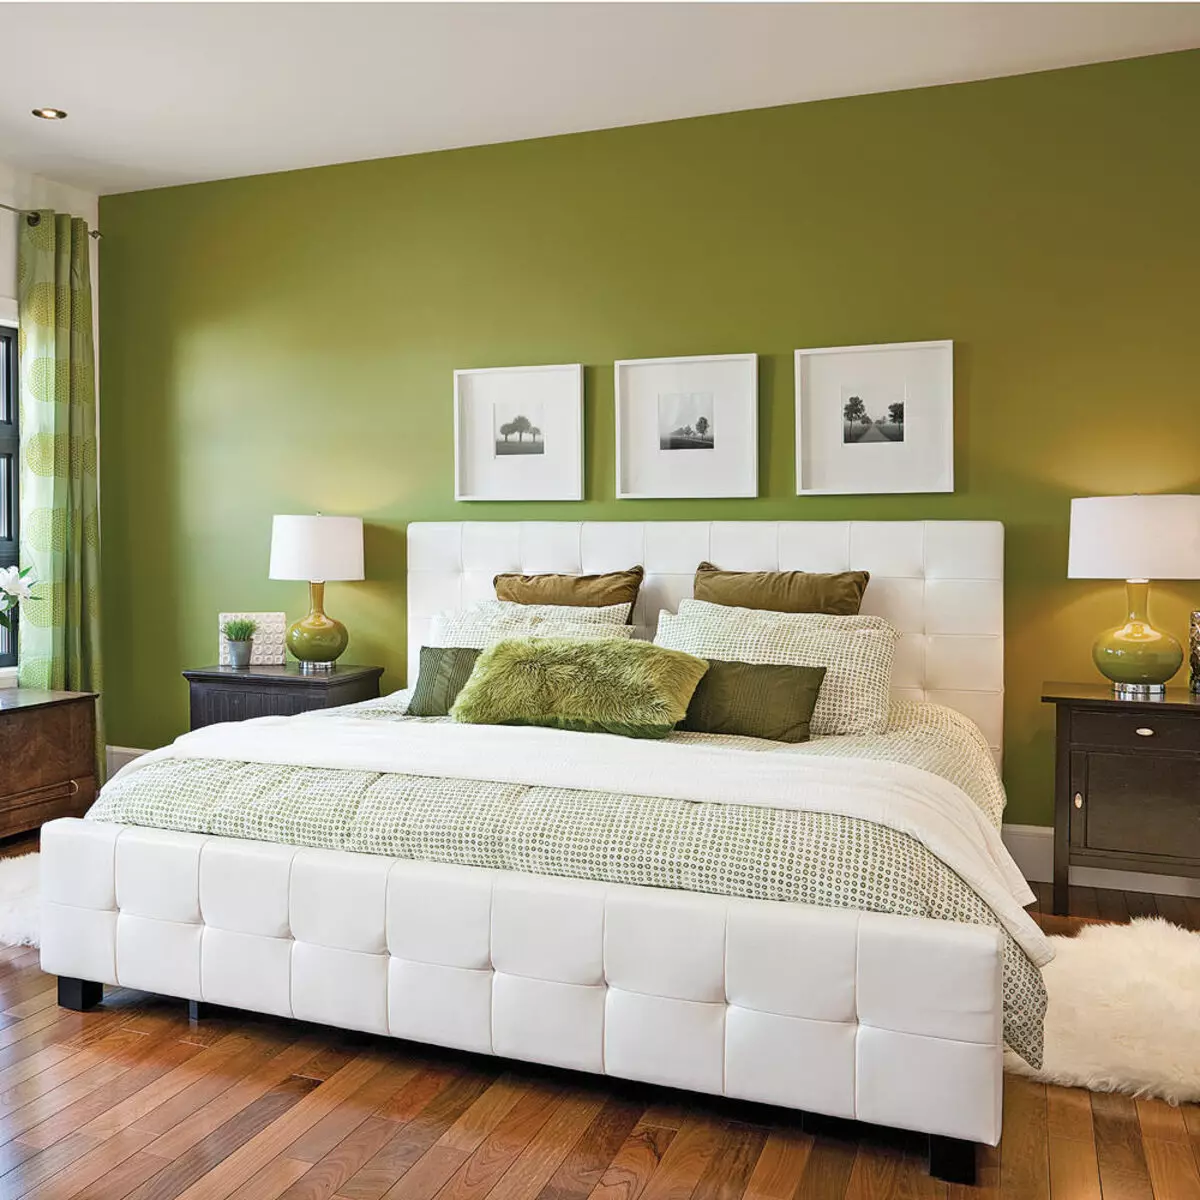 ベッドルームのデザイン（183枚の写真）：アパートでベッドルームのインテリアデザインのアイデア、シックな排他的なデザインプロジェクト。テキスタイルや珍しいアクセサリー付きベッドルームを飾るためにどのように？ 190_83